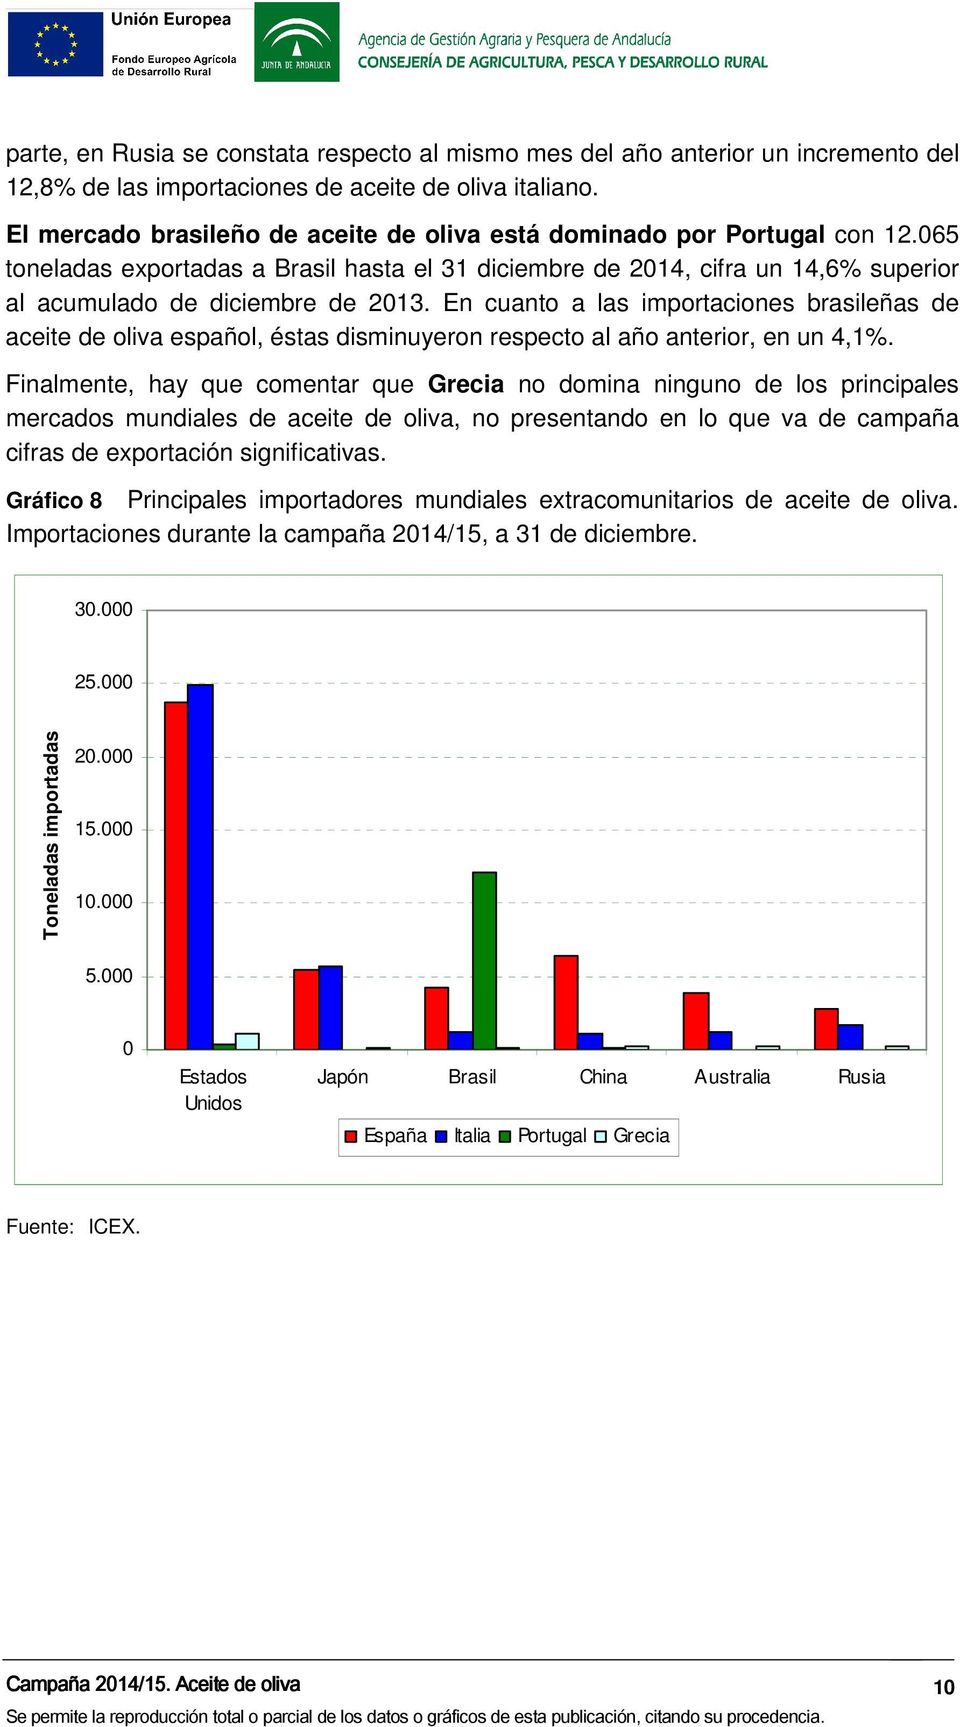 En cuanto a las importaciones brasileñas de aceite de oliva español, éstas disminuyeron respecto al año anterior, en un 4,1%.